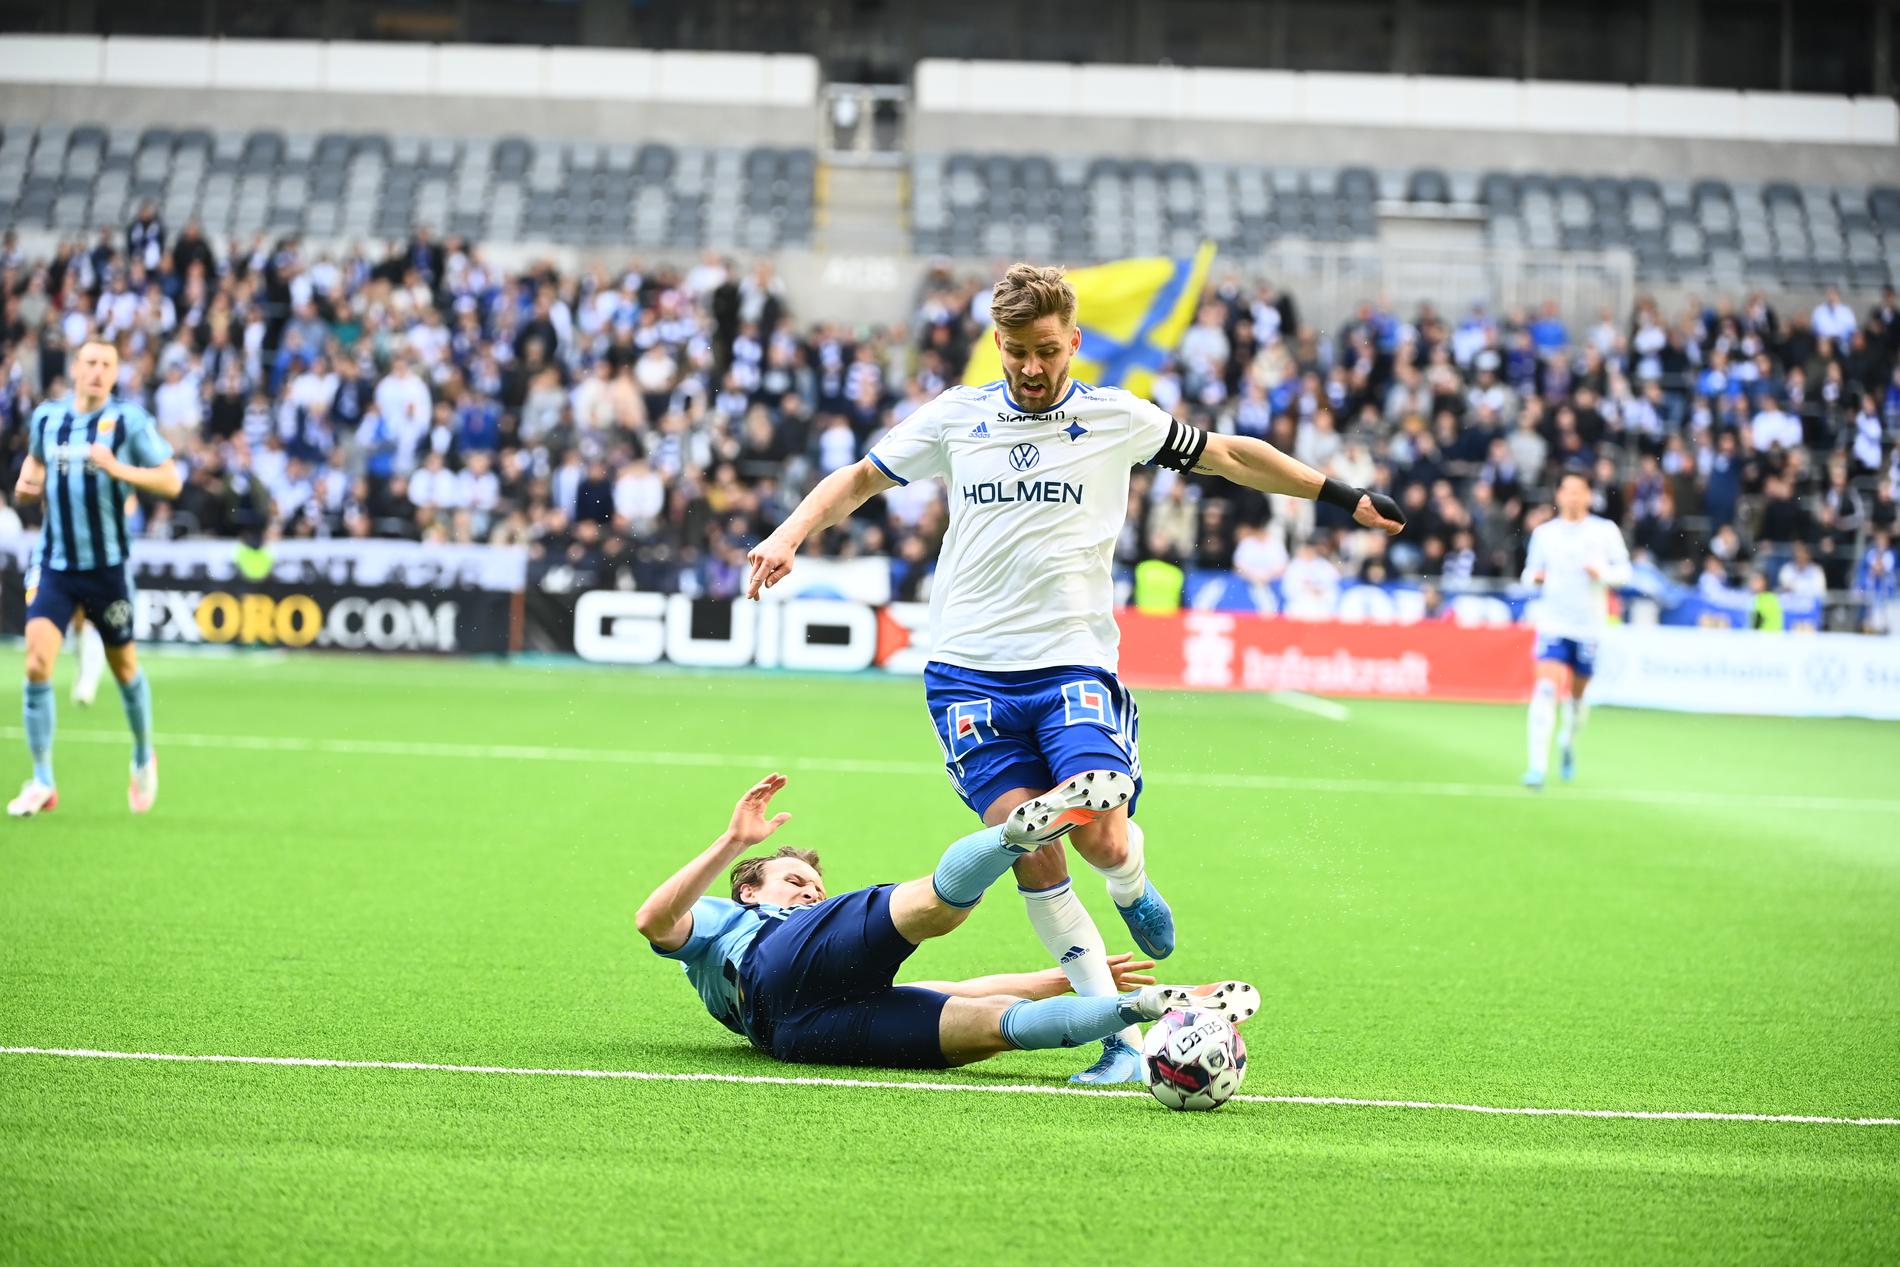 Tacklingen av Ekdal som ledde till straff för IFK Norrköping.